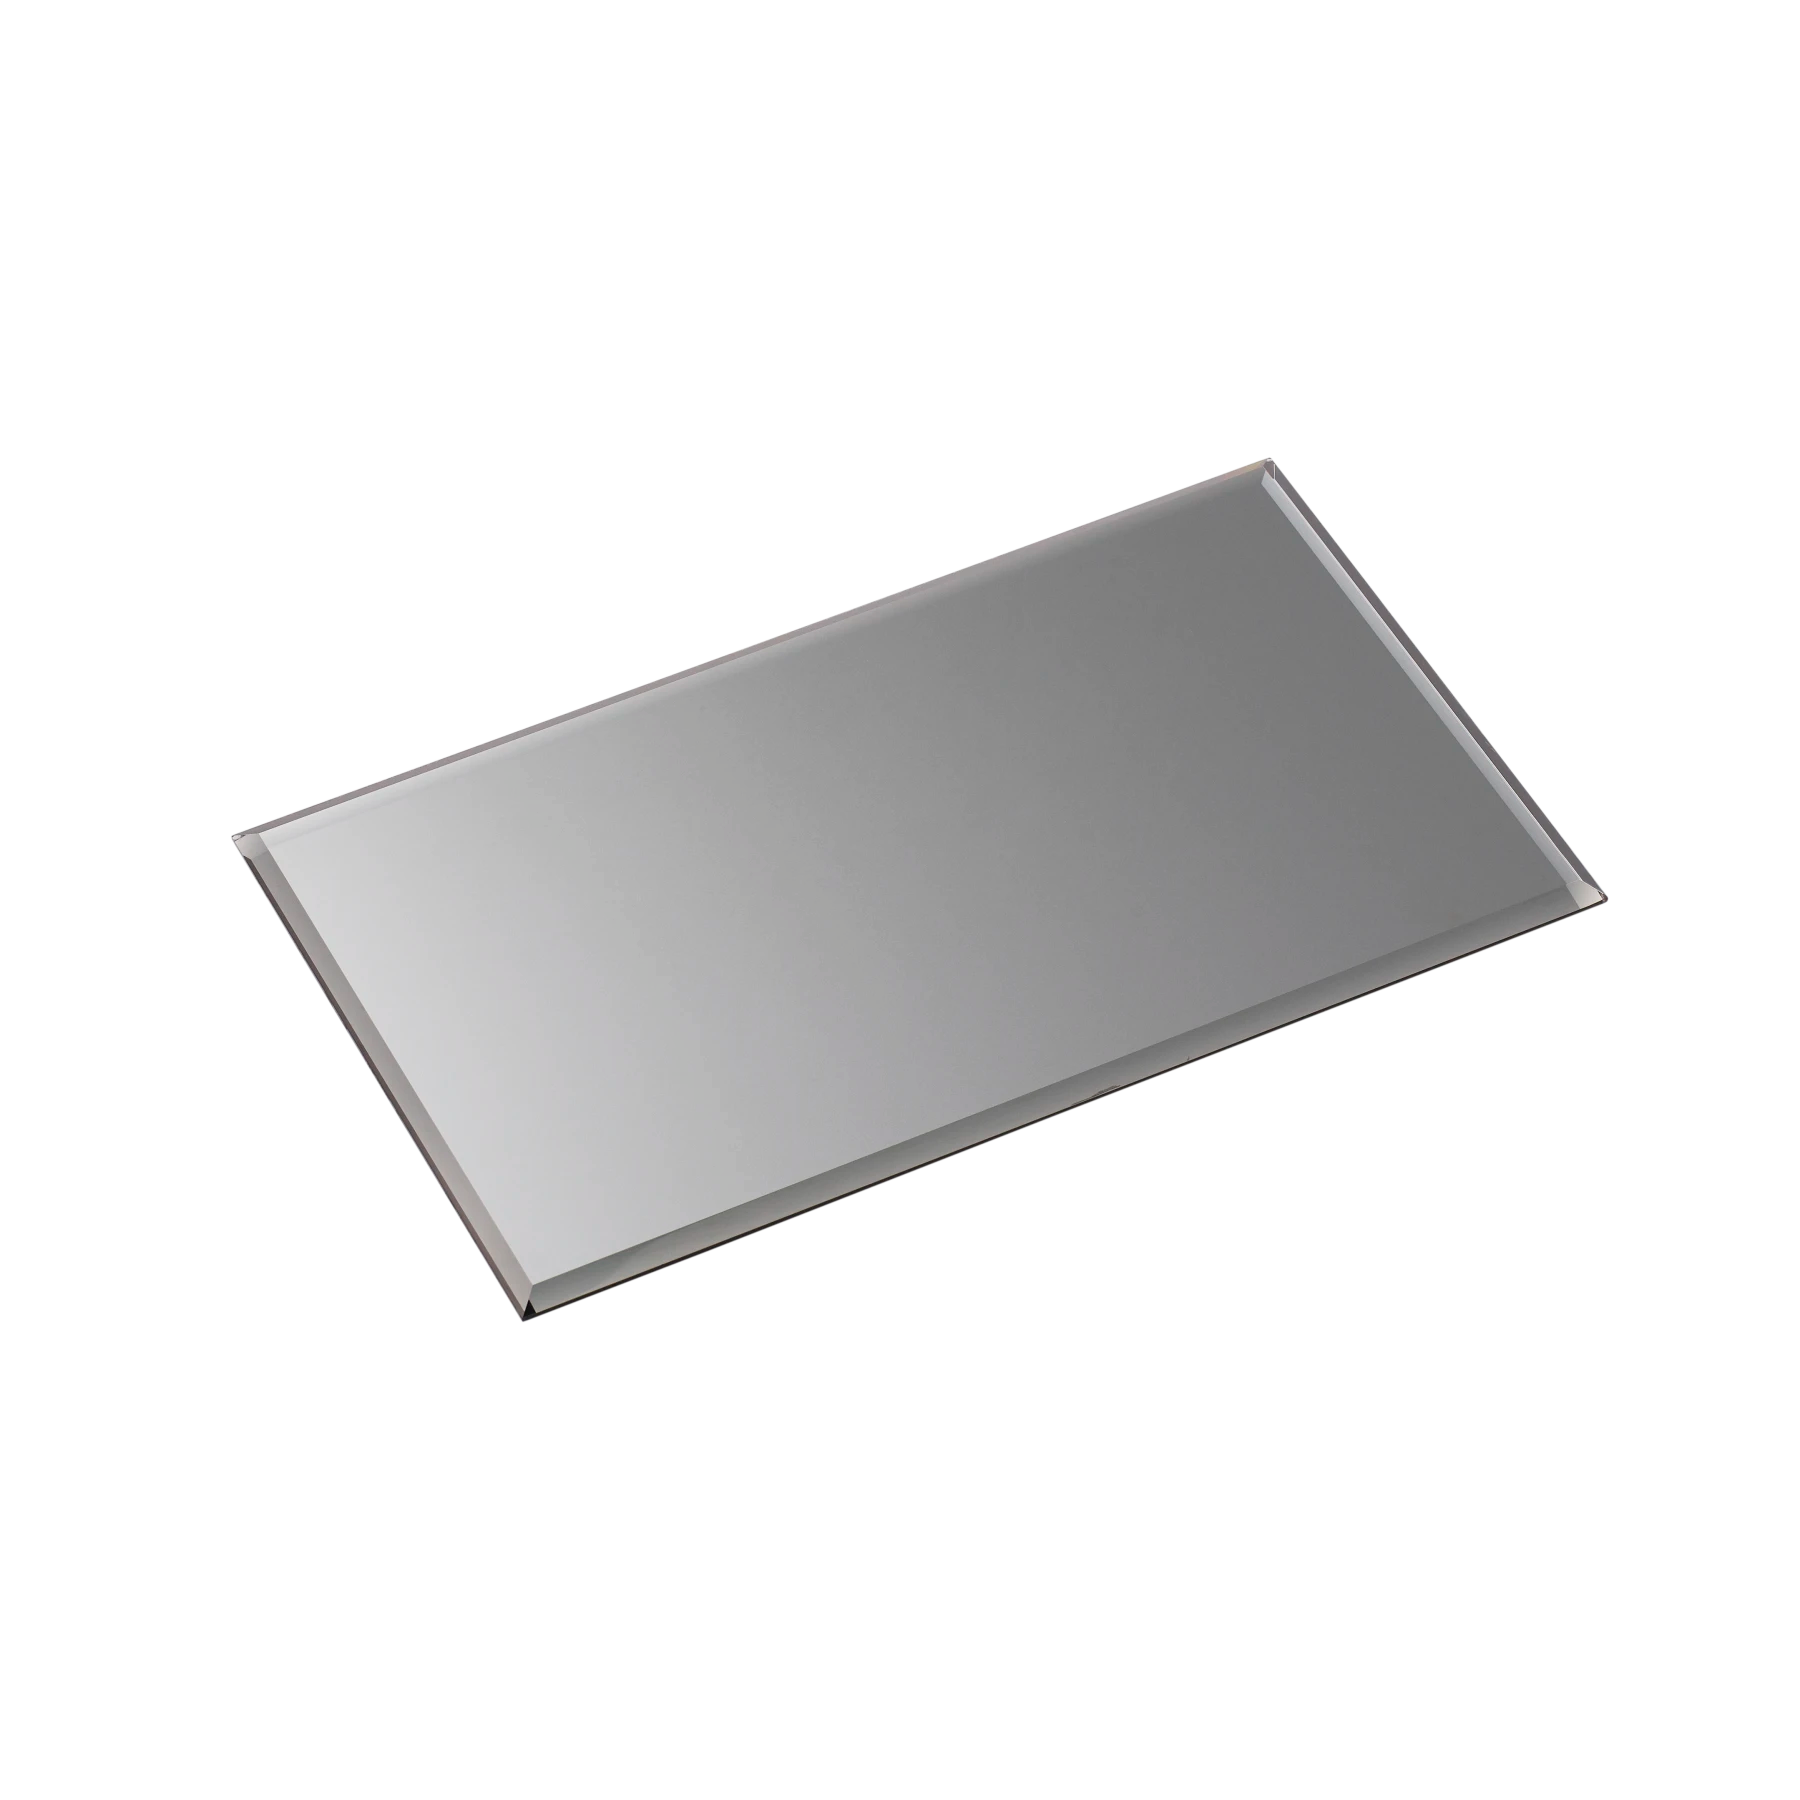 STOFF glass base (rectangular), smoked black